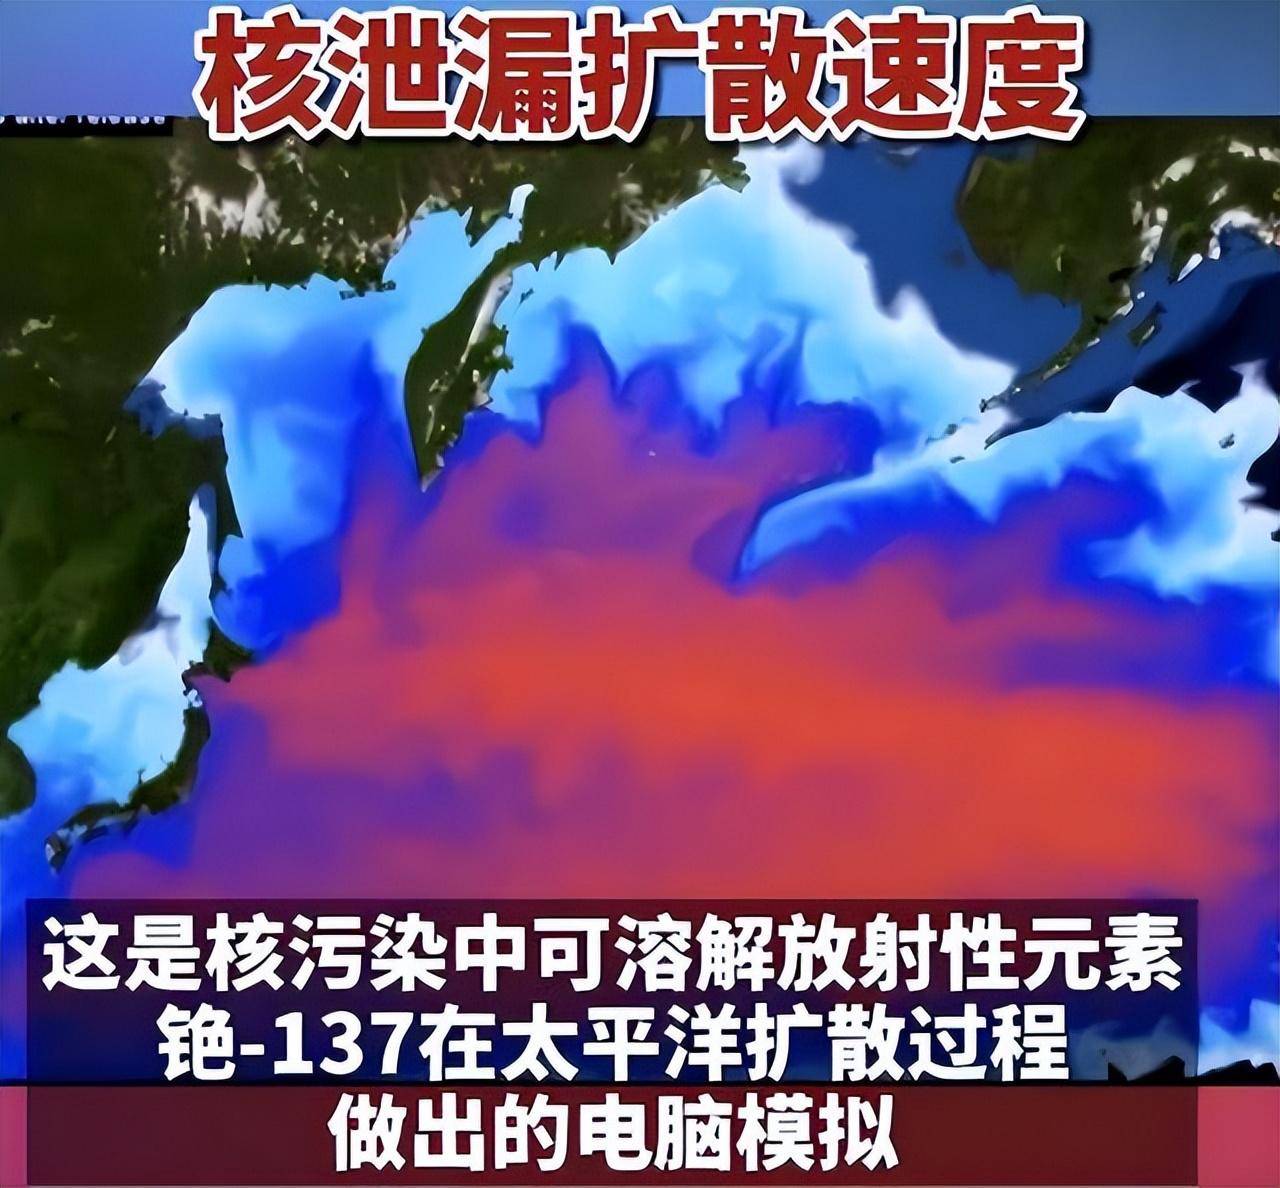 日本美滨核电站发生泄漏,7吨核废水进入环境!会有什么影响?